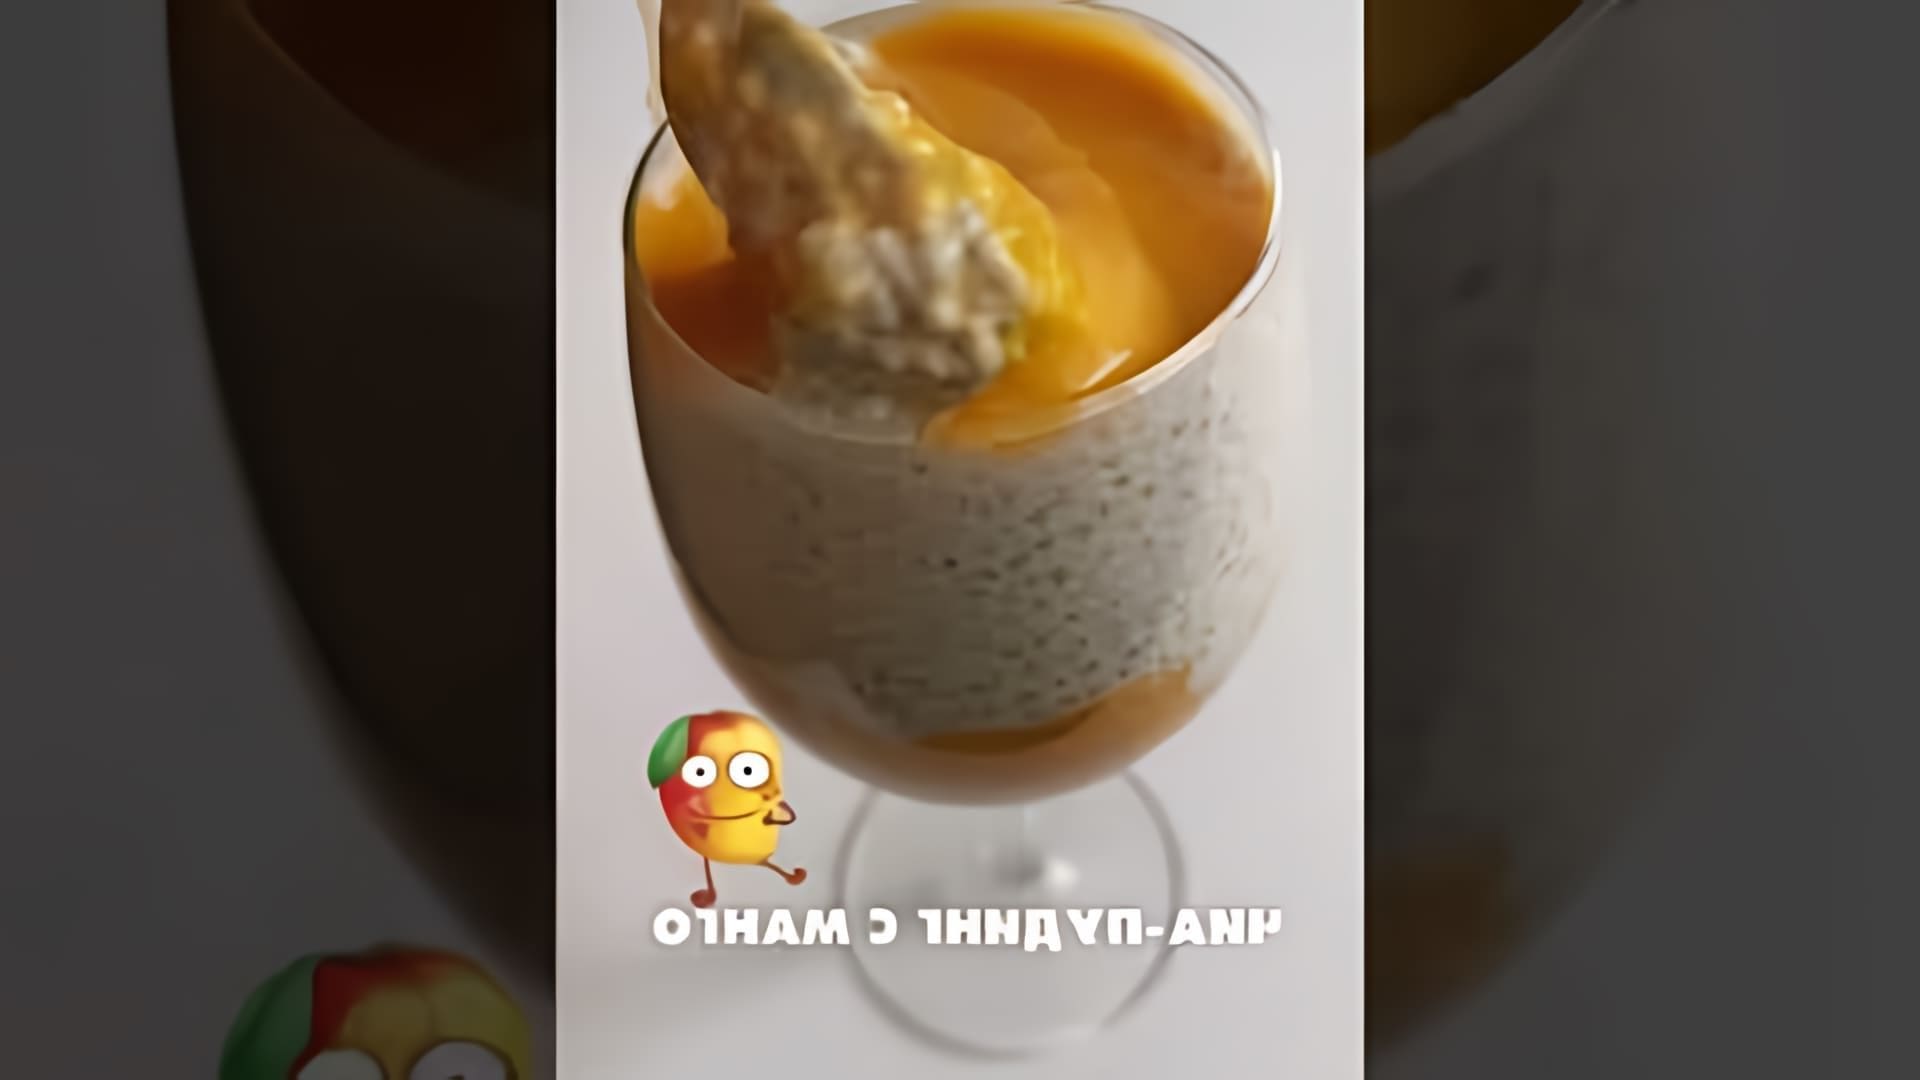 В этом видео демонстрируется рецепт приготовления вкусного чиа-пудинга с манго